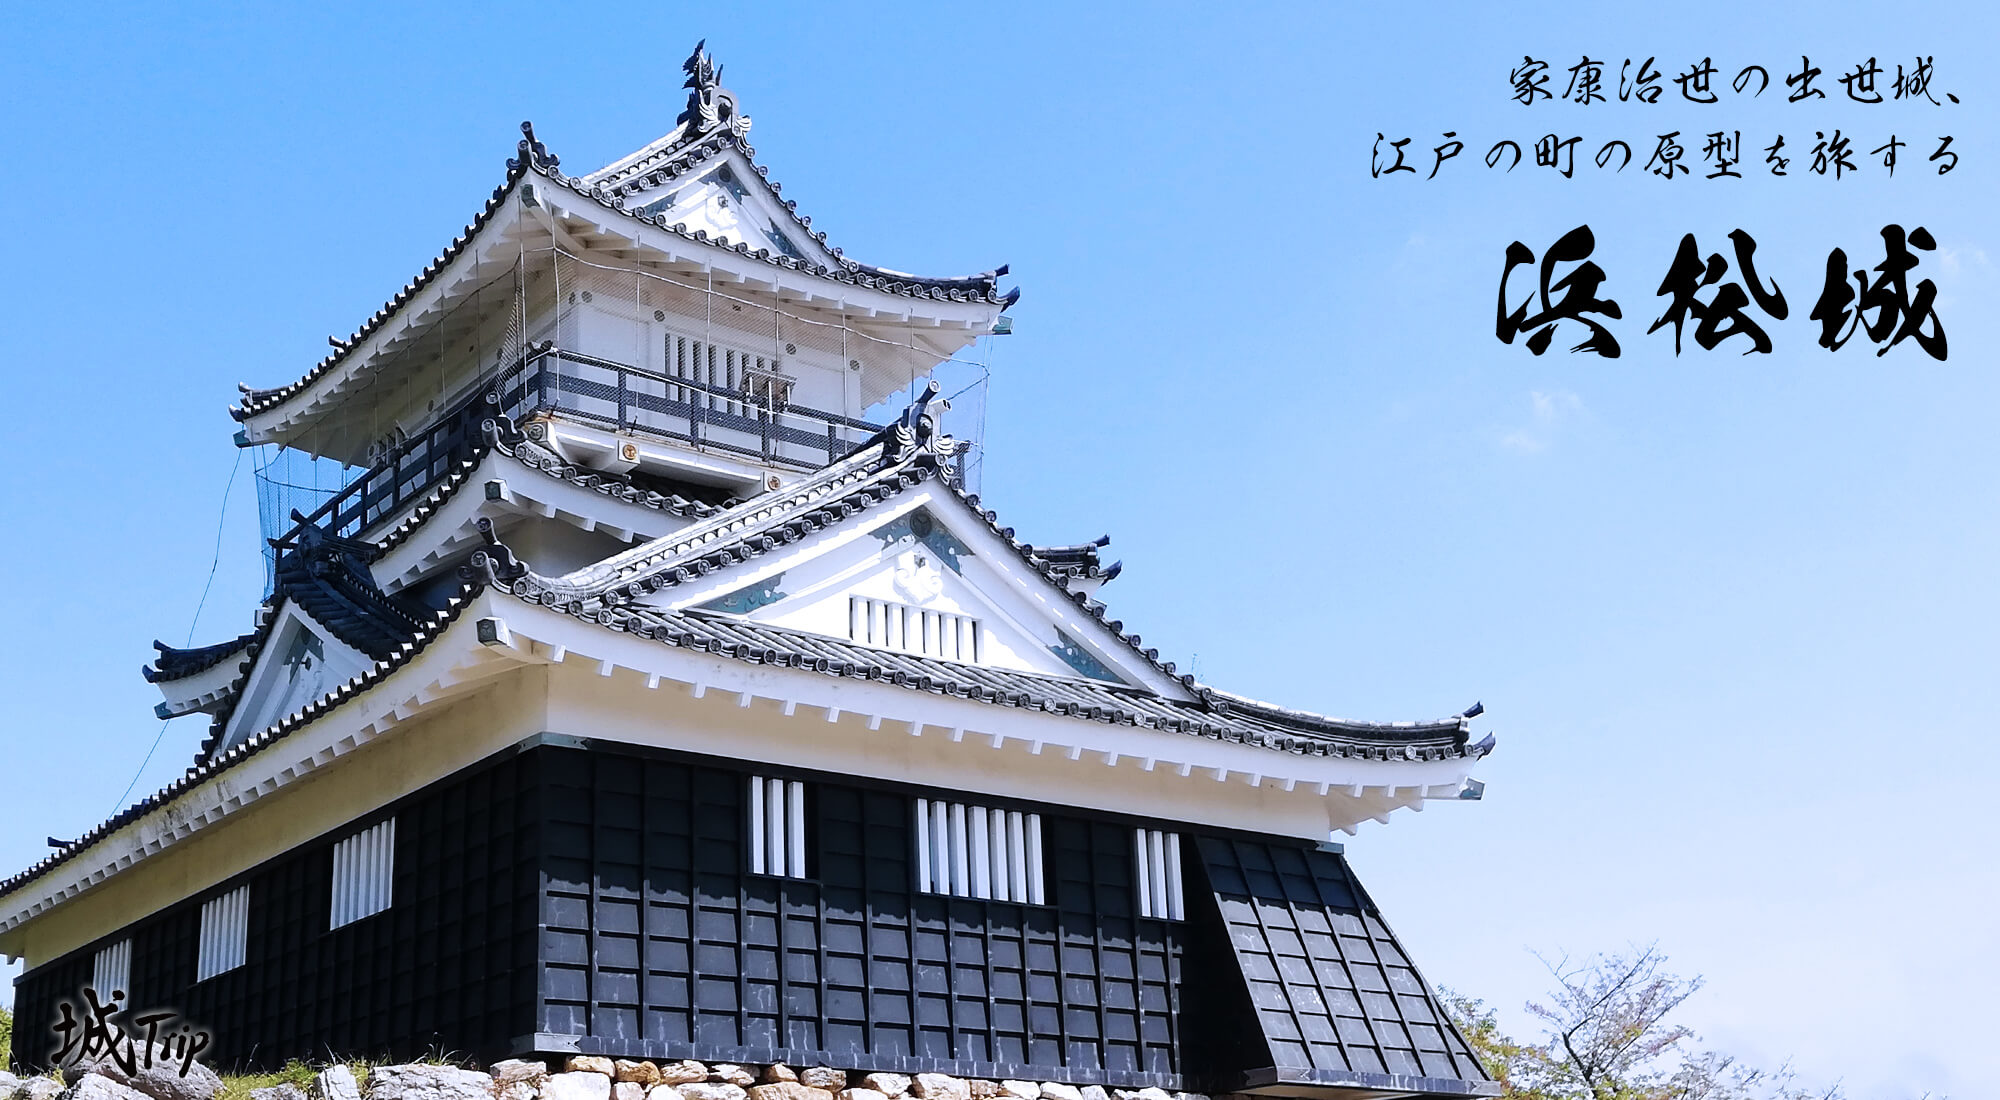 日本三大山城、雲海に現れる山頂の天守群 備中松山城